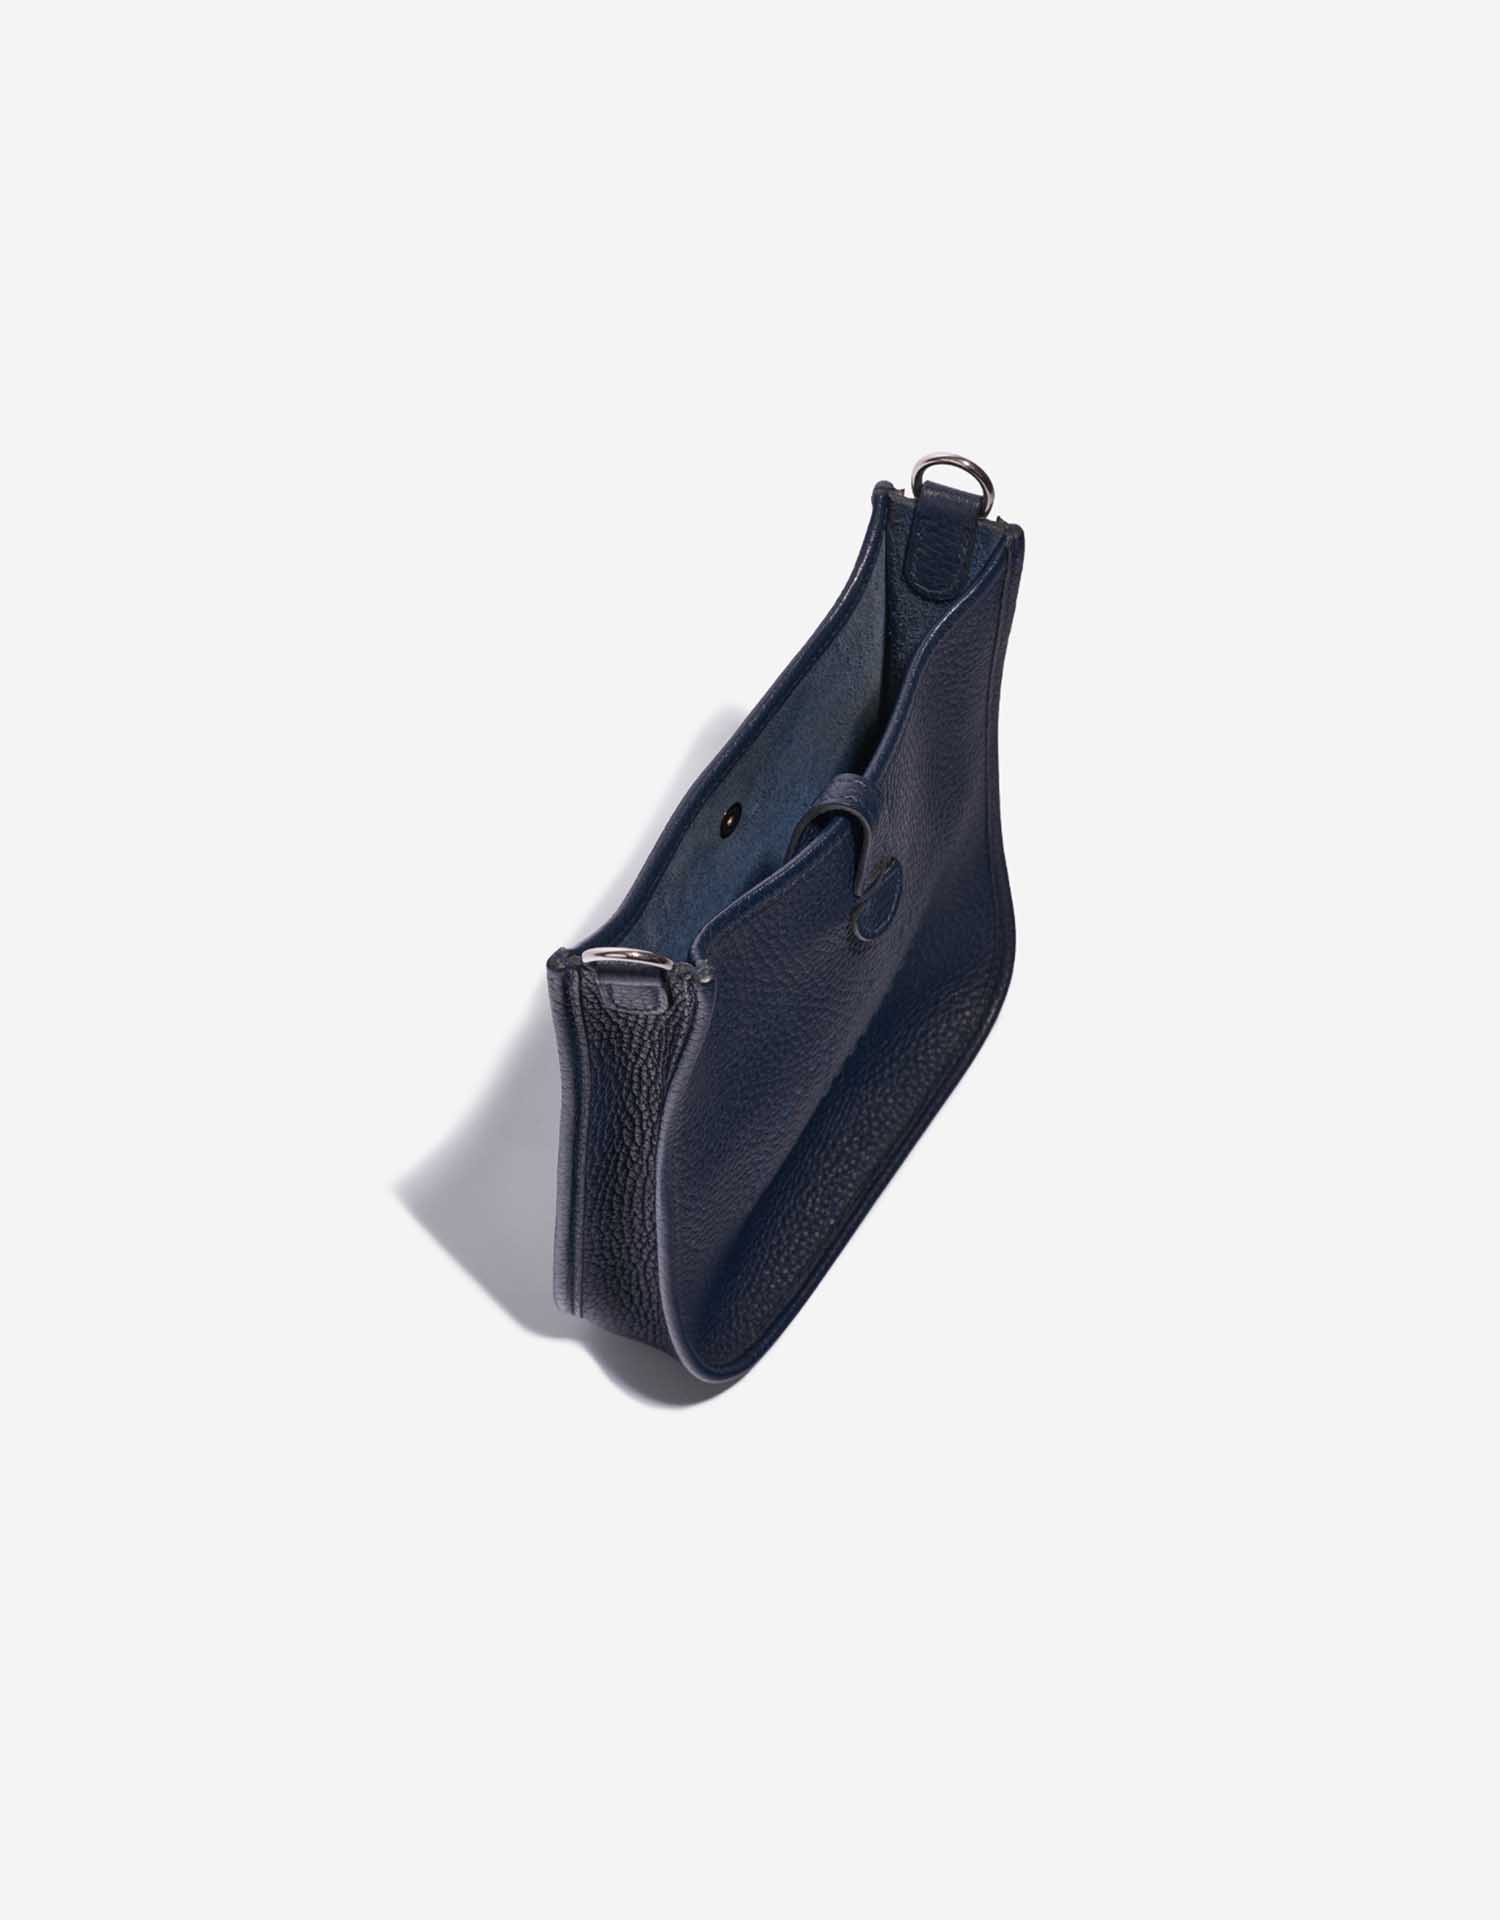 Pre-owned Hermès bag Evelyne 16 Taurillon Clemence Blue Nuit Blue Inside | Sell your designer bag on Saclab.com